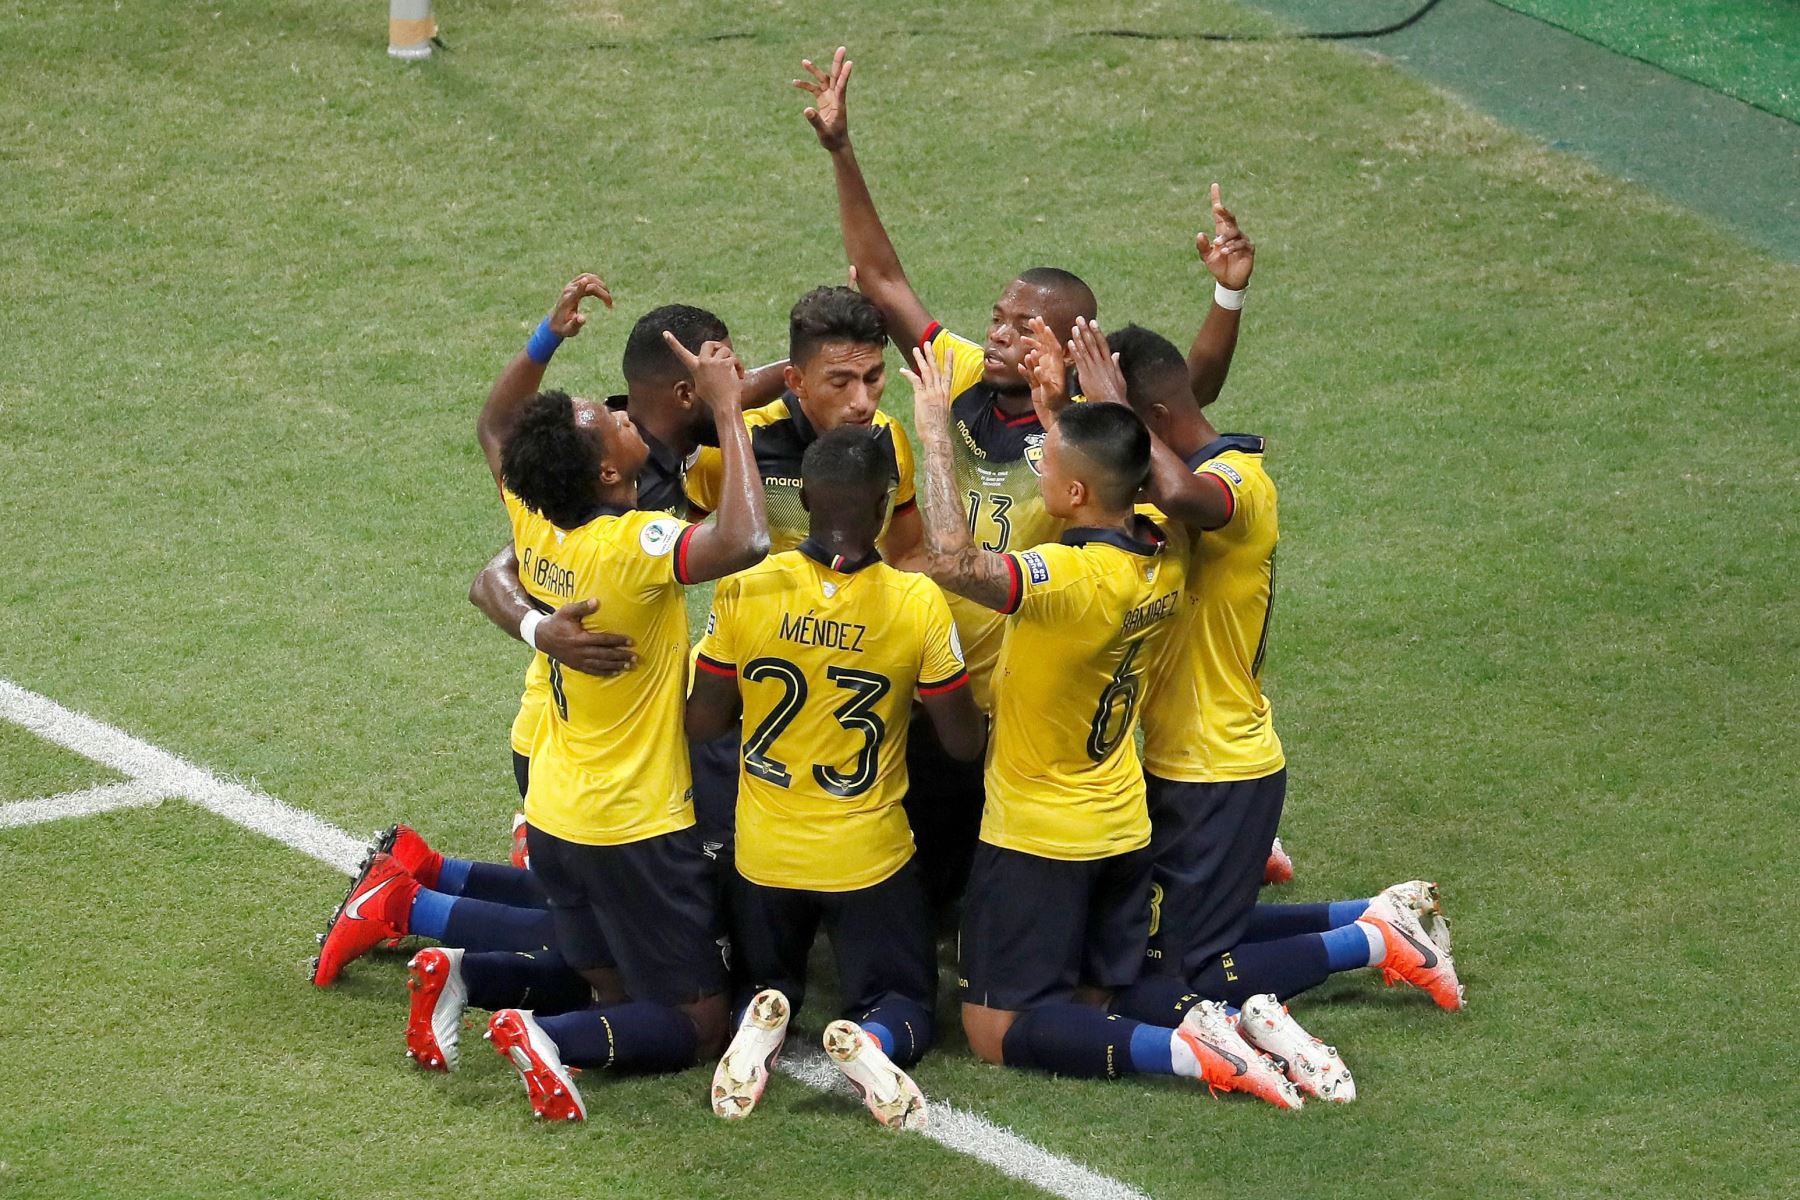 Jugadores de Ecuador celebran un gol, durante el partido Ecuador-Chile del Grupo C de la Copa América de Fútbol 2019, en el Estadio Arena Fonte Nova de Salvador, Brasil. EFE